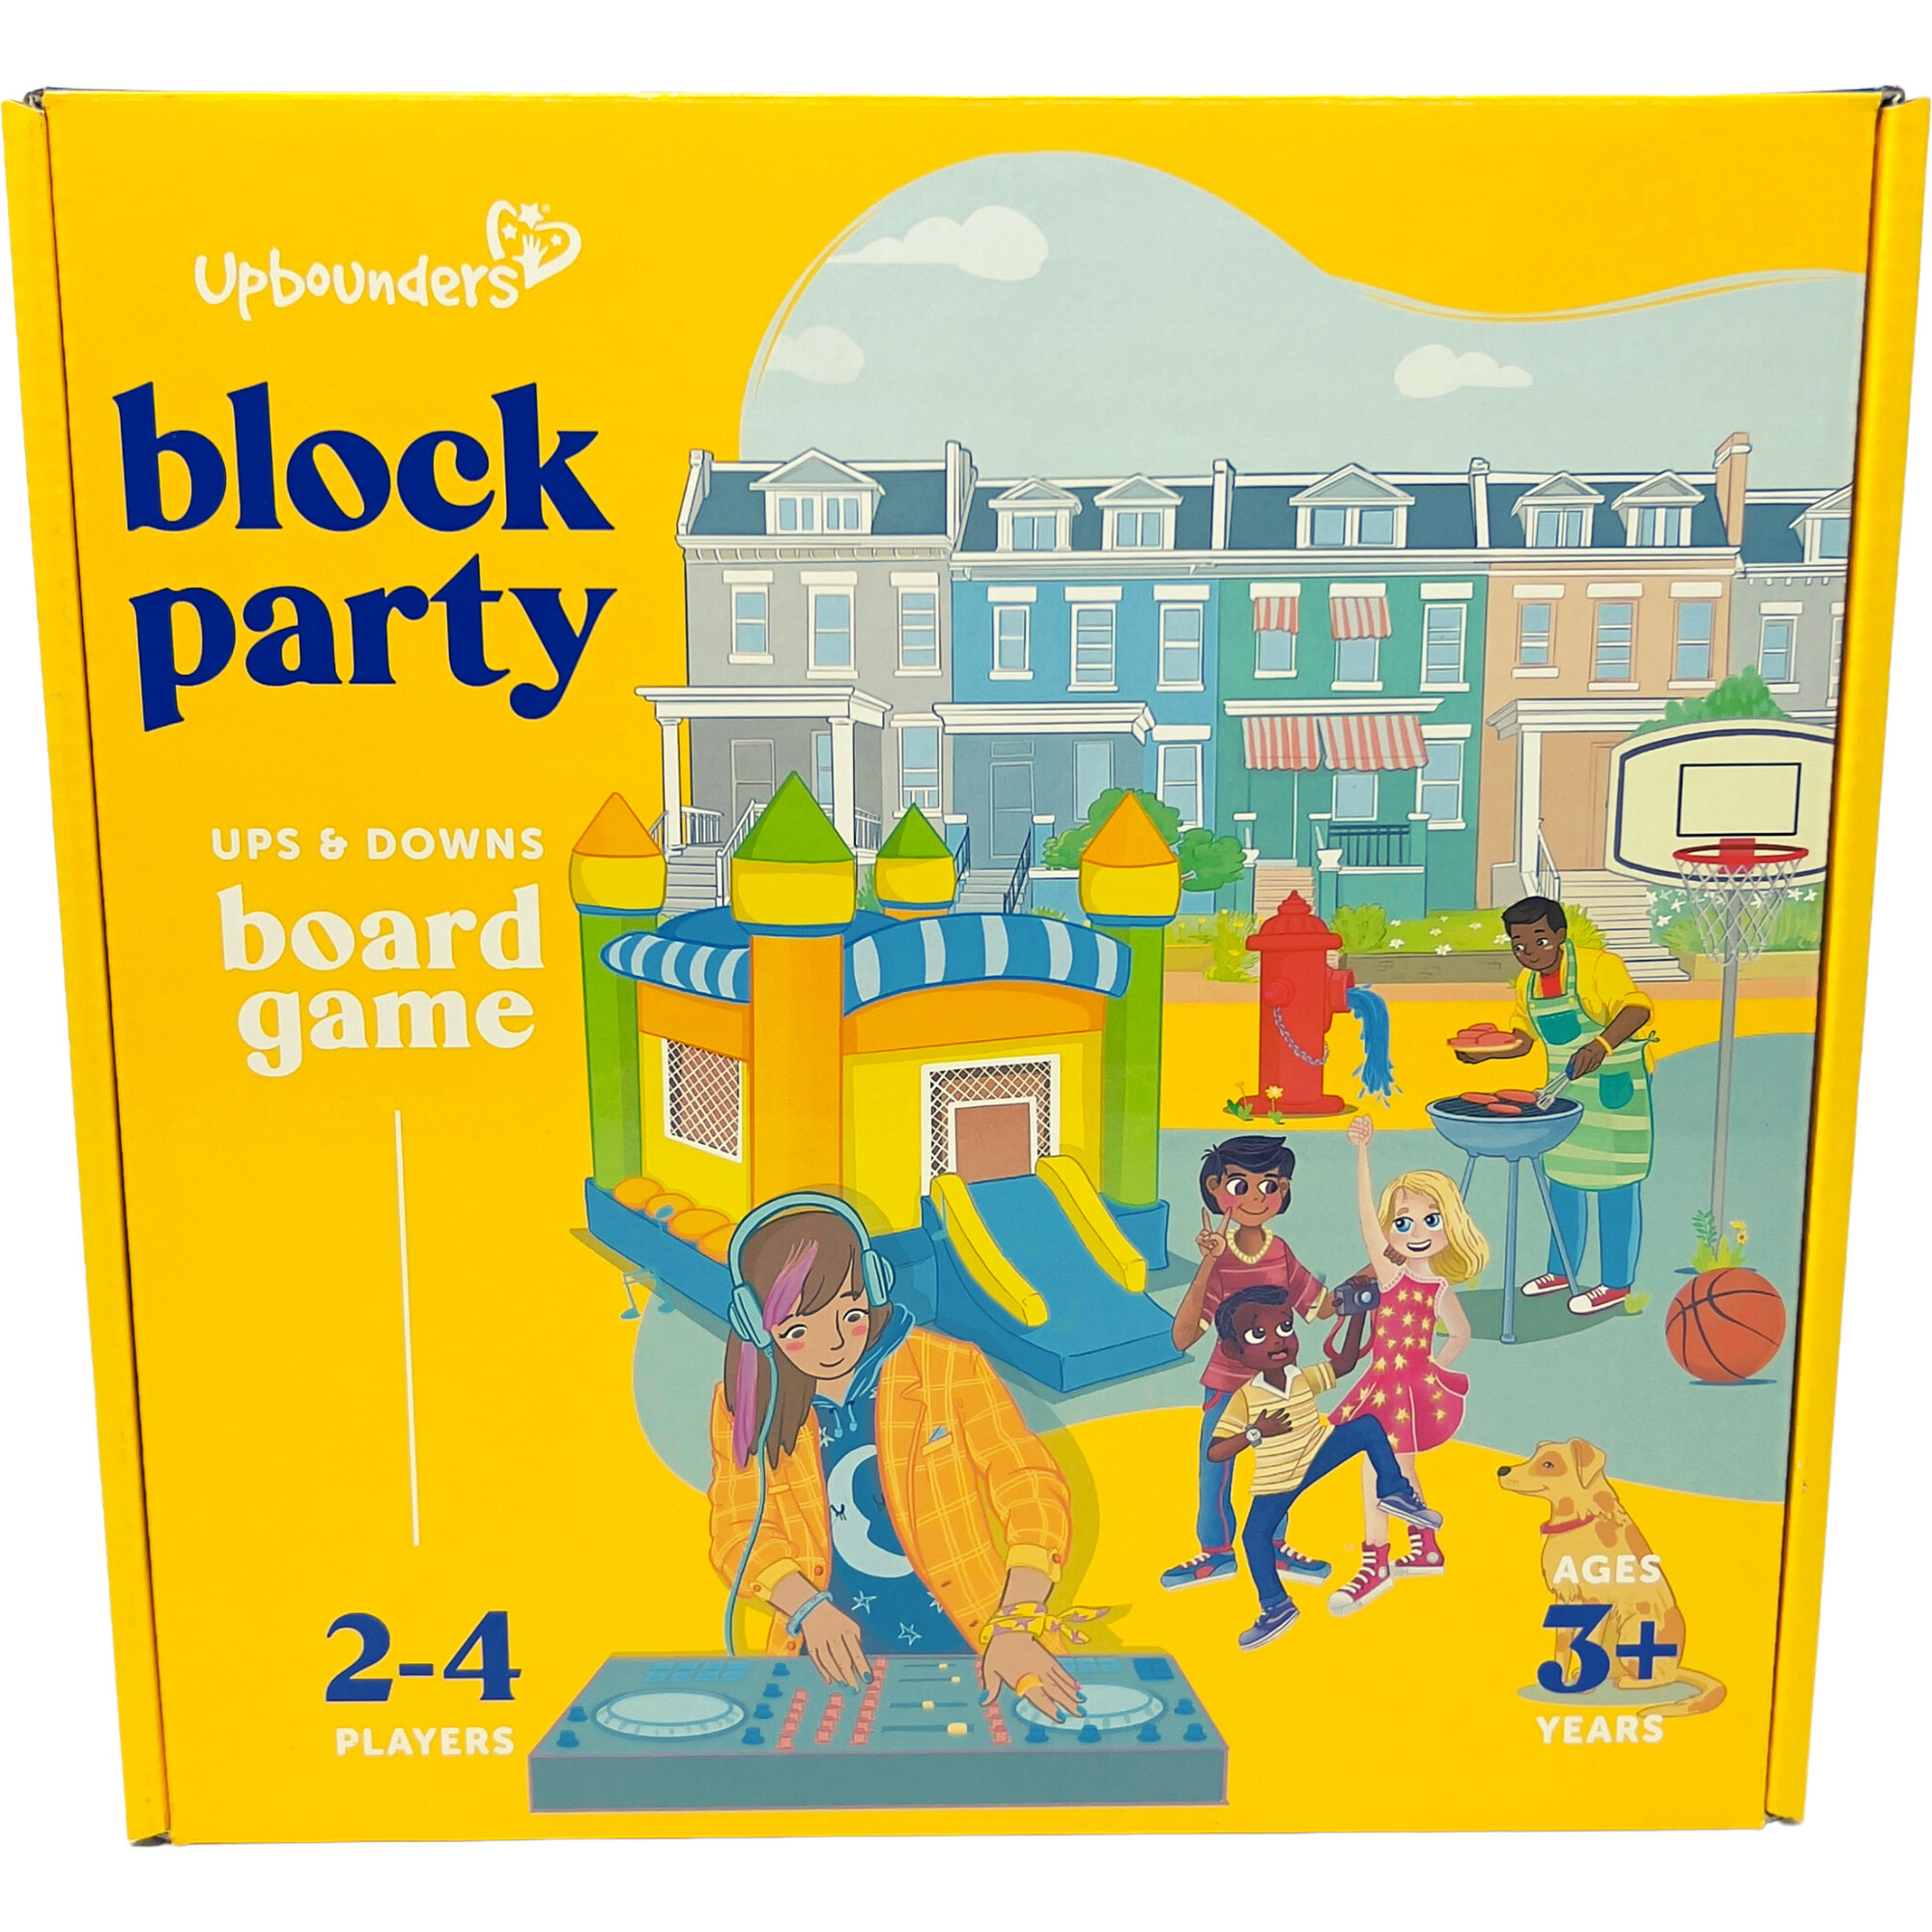 Block It!, Board Game